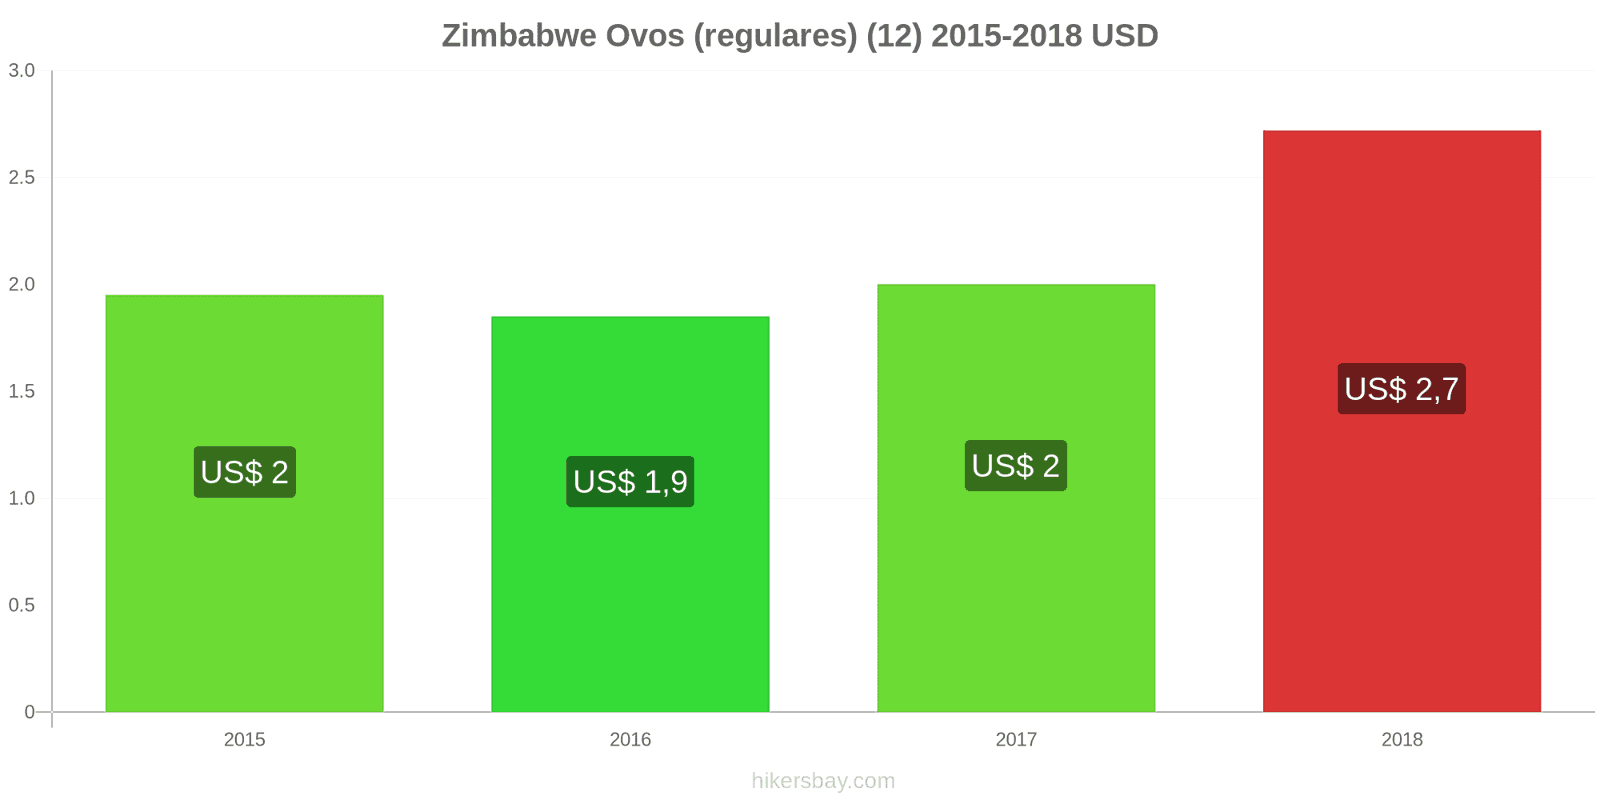 Zimbabwe mudanças de preços Ovos (normais) (12 unidades) hikersbay.com